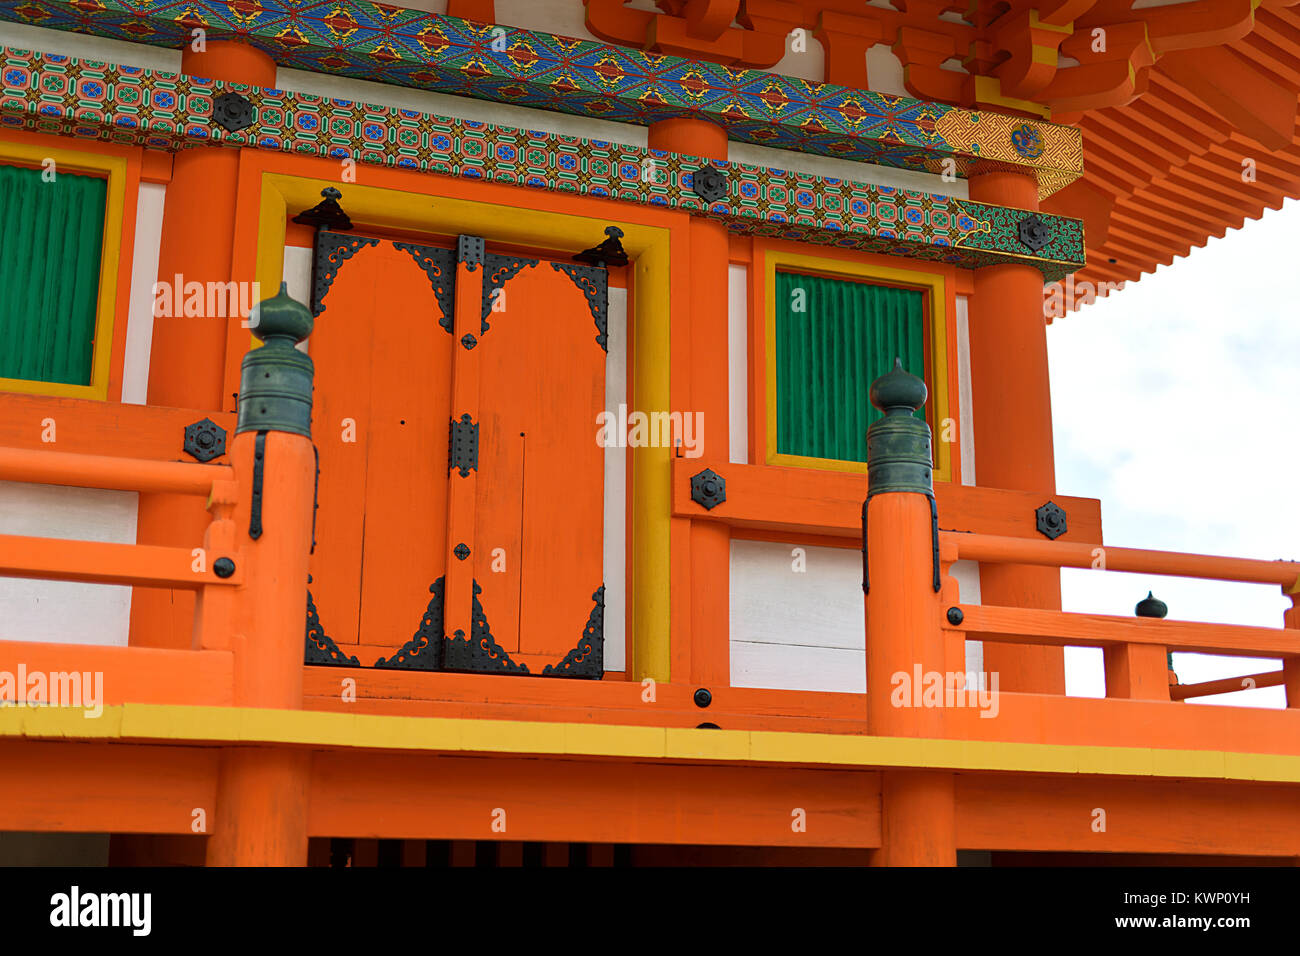 Dettagli architettonici di Sanjunoto pagoda a Kiyomizu-dera tempio Buddista dipinto in colore arancio brillante con ornamenti colorati. Kyoto, Giappone. Foto Stock